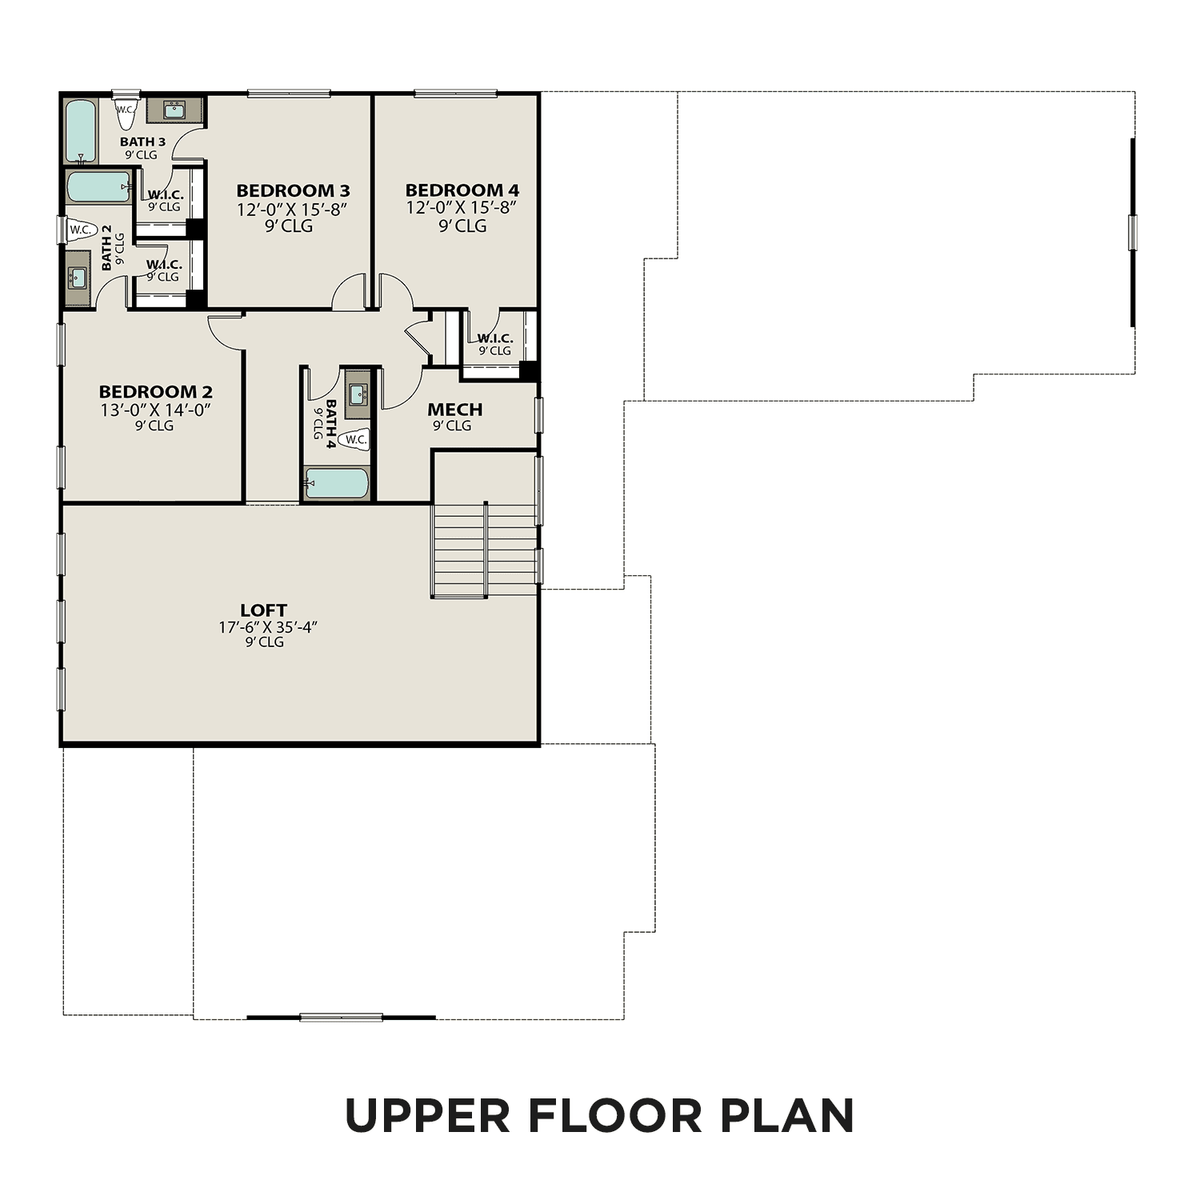 2 - The Bledsoe A floor plan layout for 5631 Eaglemont Dr in Davidson Homes' Shelton Square community.